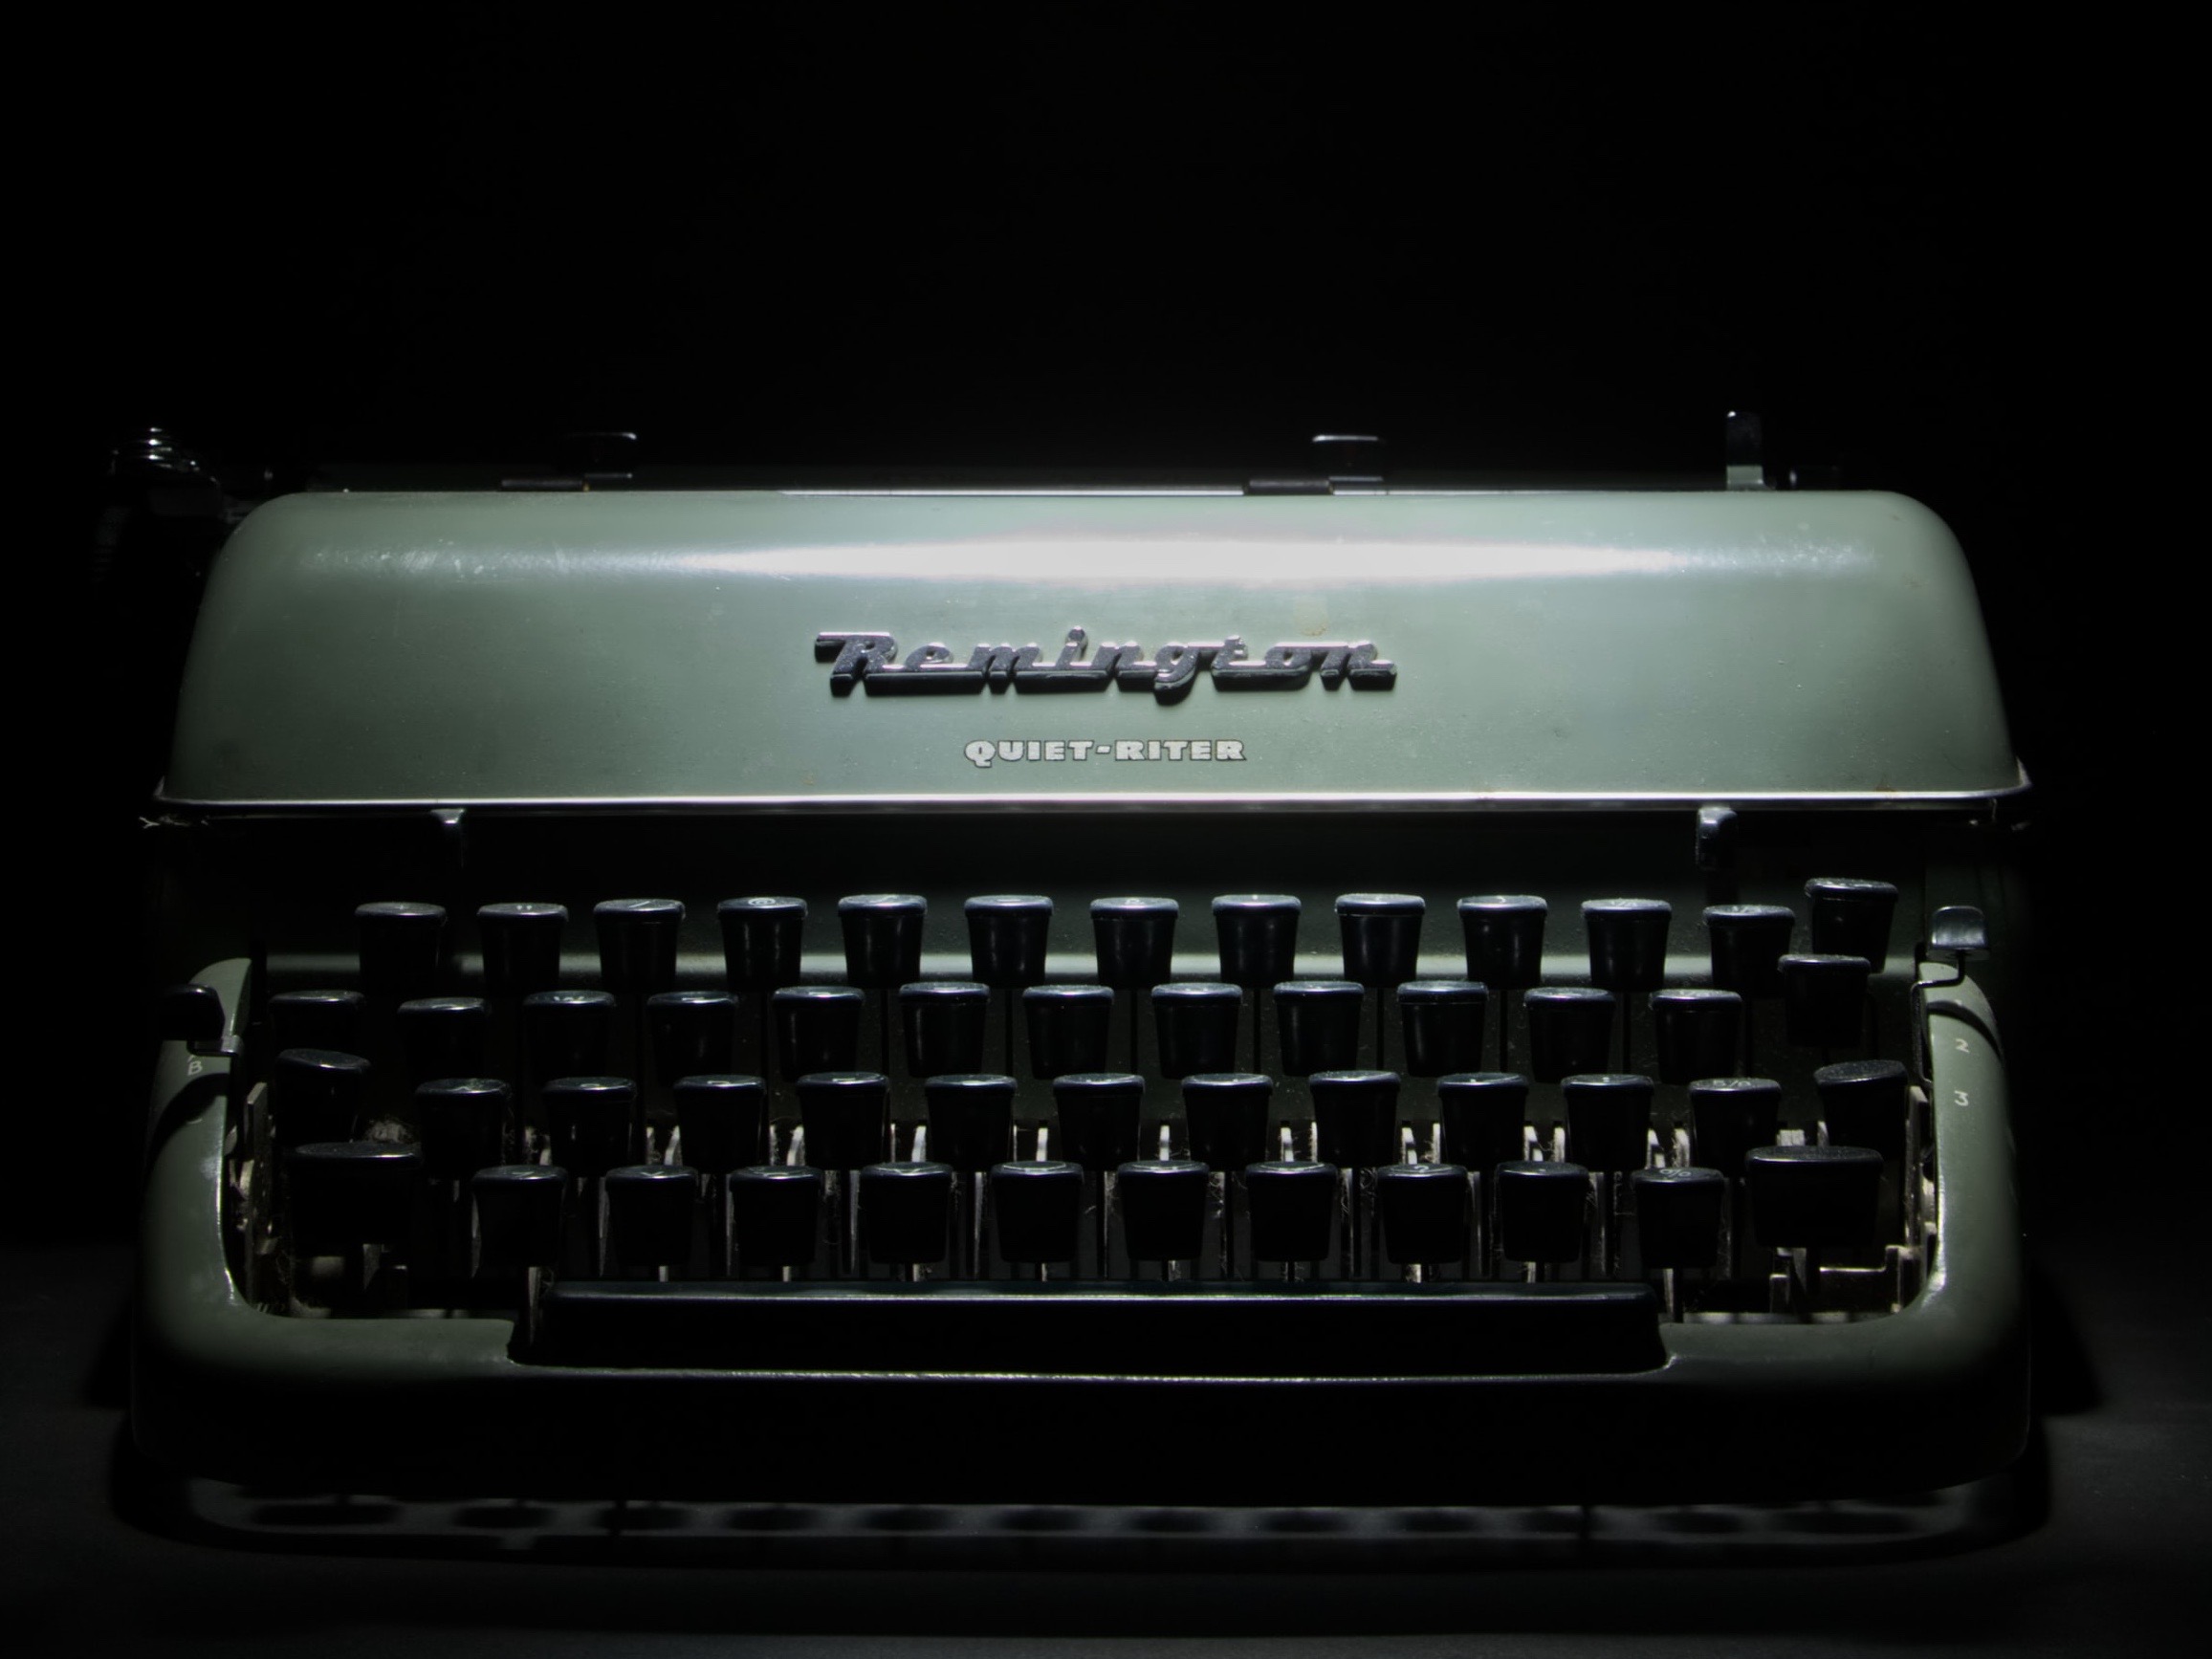 Green Remington typewriter with black keys.